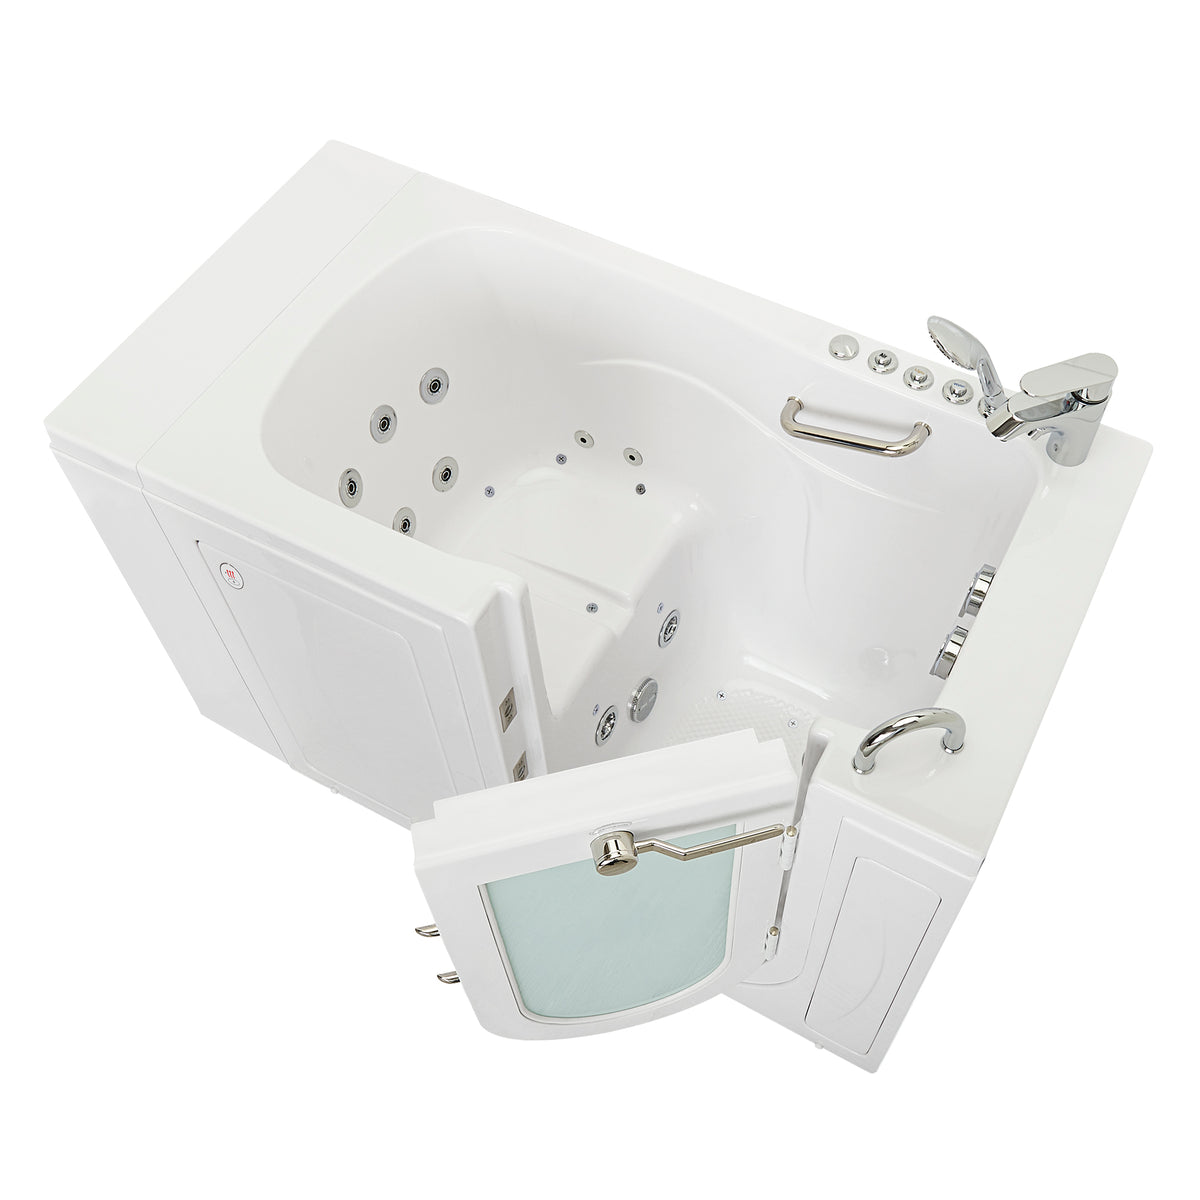 EMOKA Air Bubble Bath Spa Mat (AMQ01)